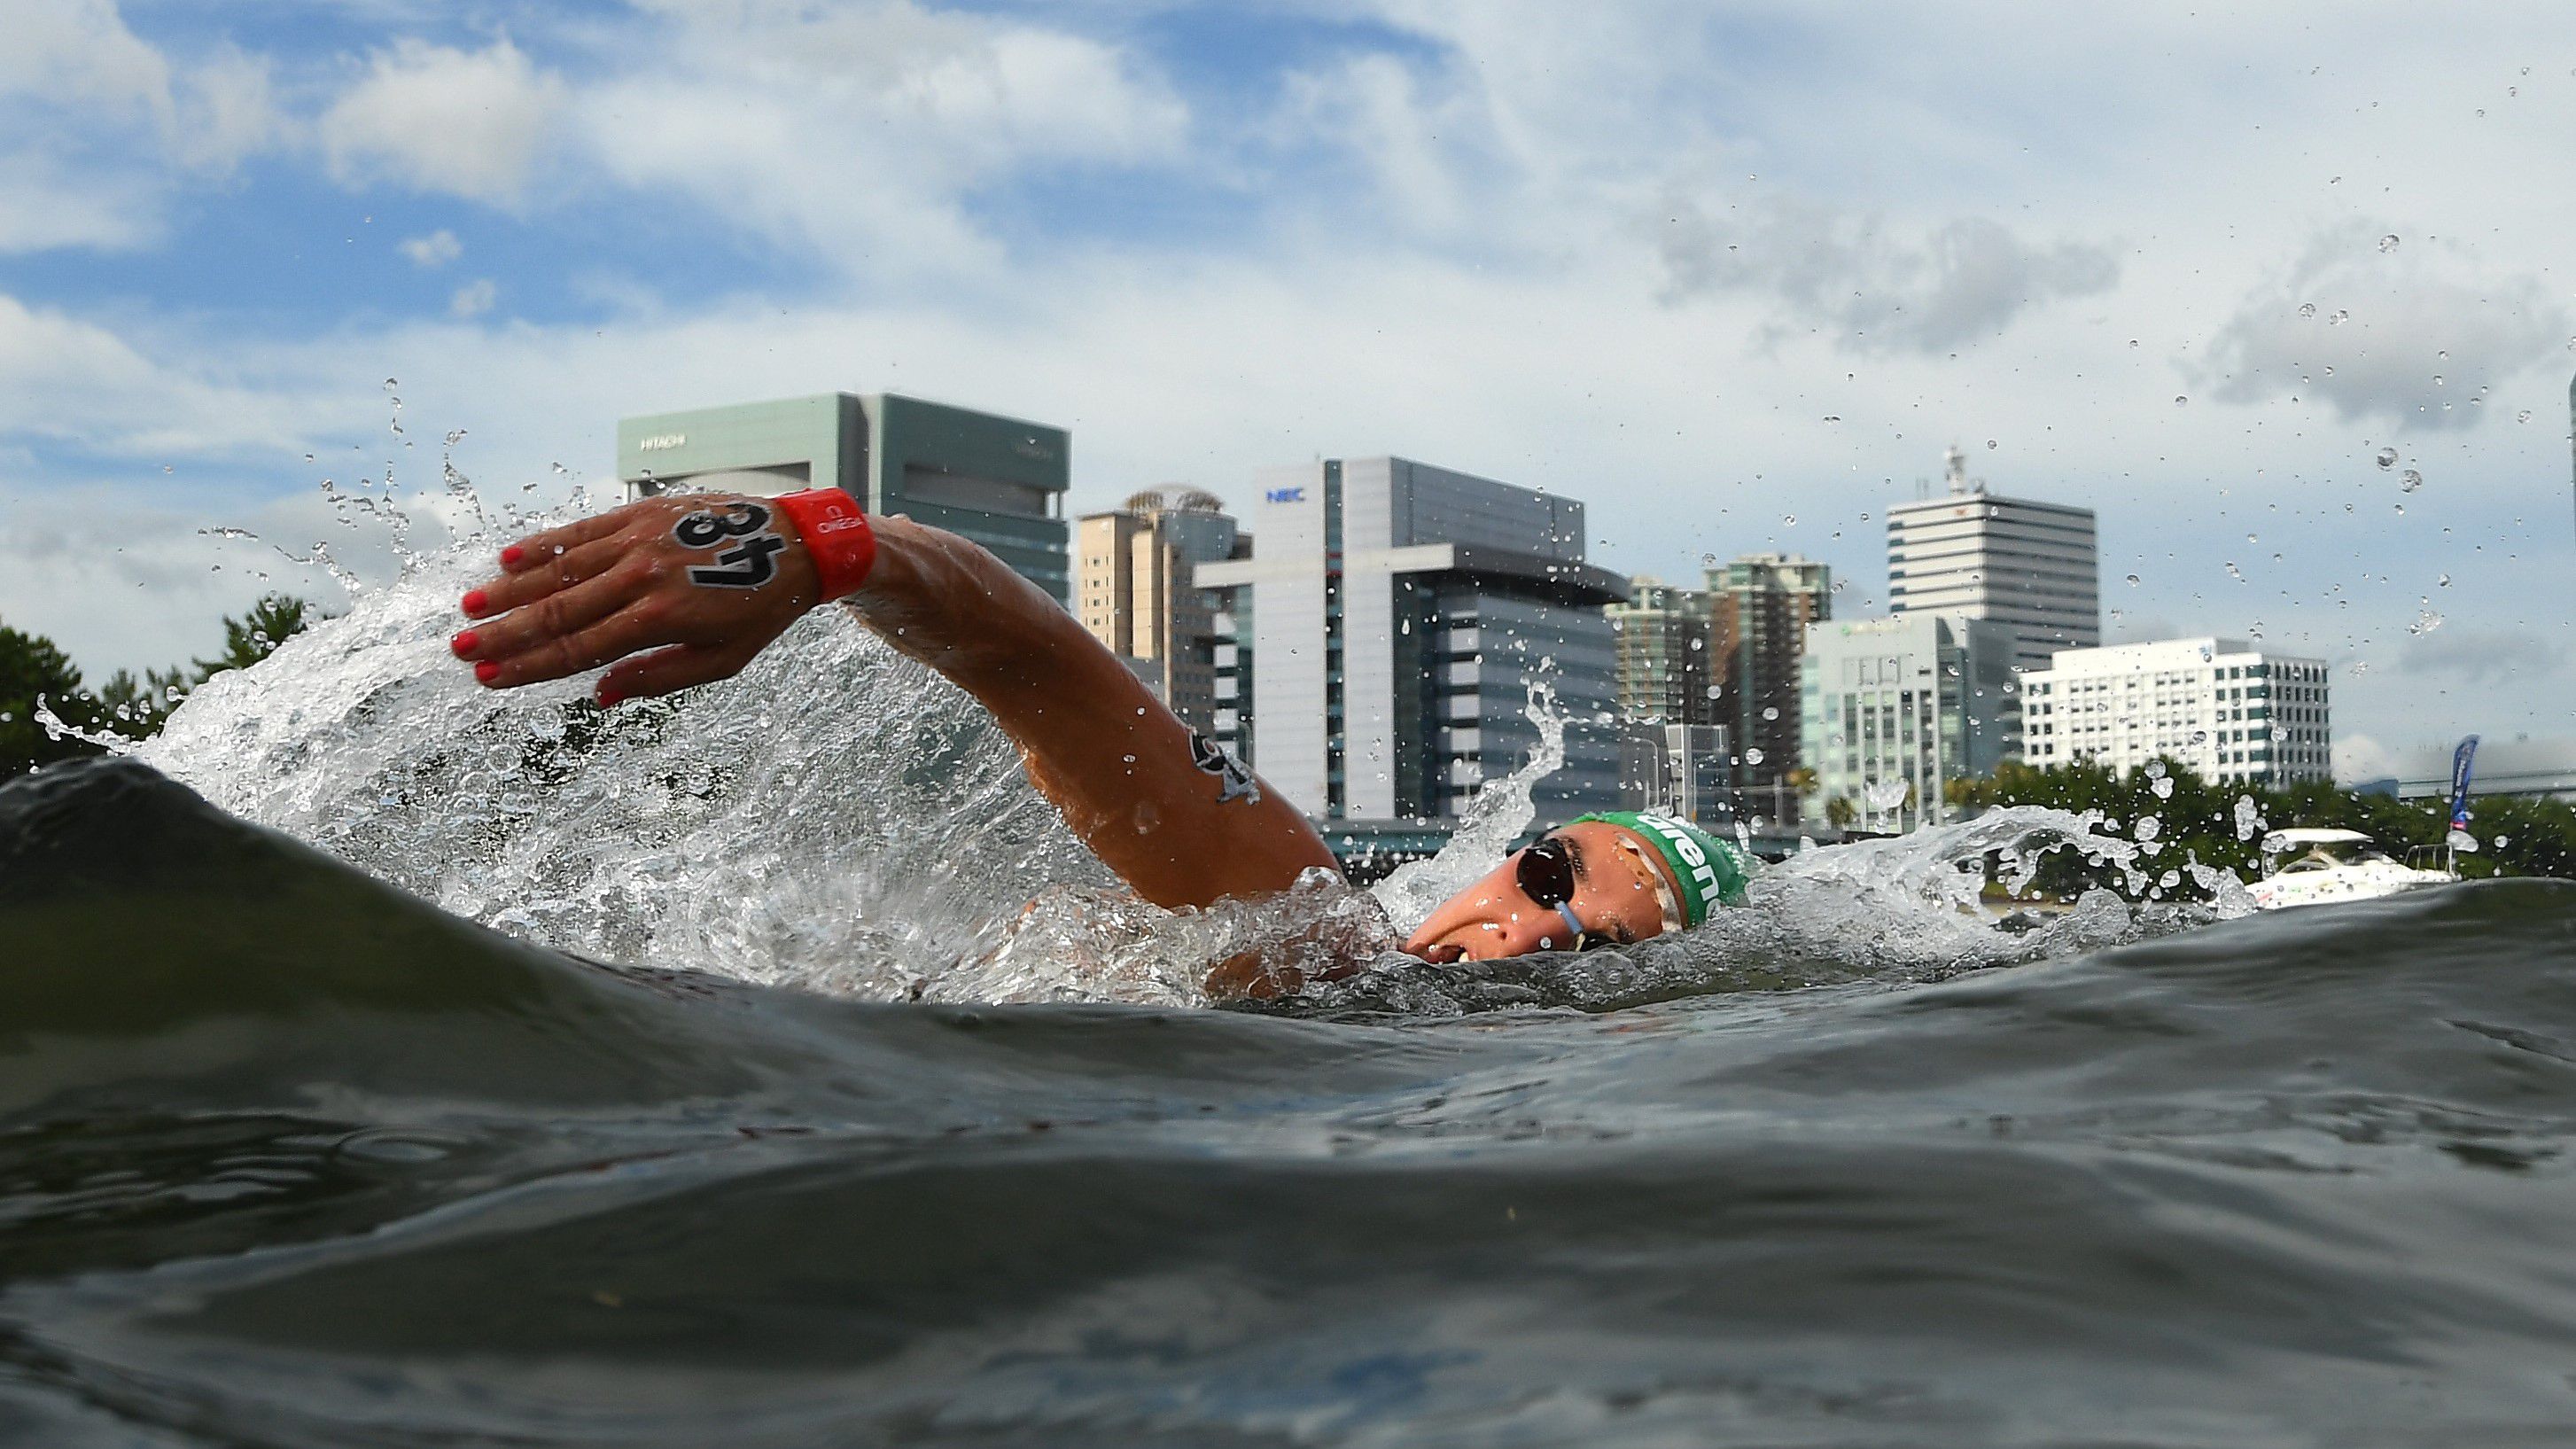 Elhalasztották a nők szombati versenyét a nyíltvízi úszó világkupán